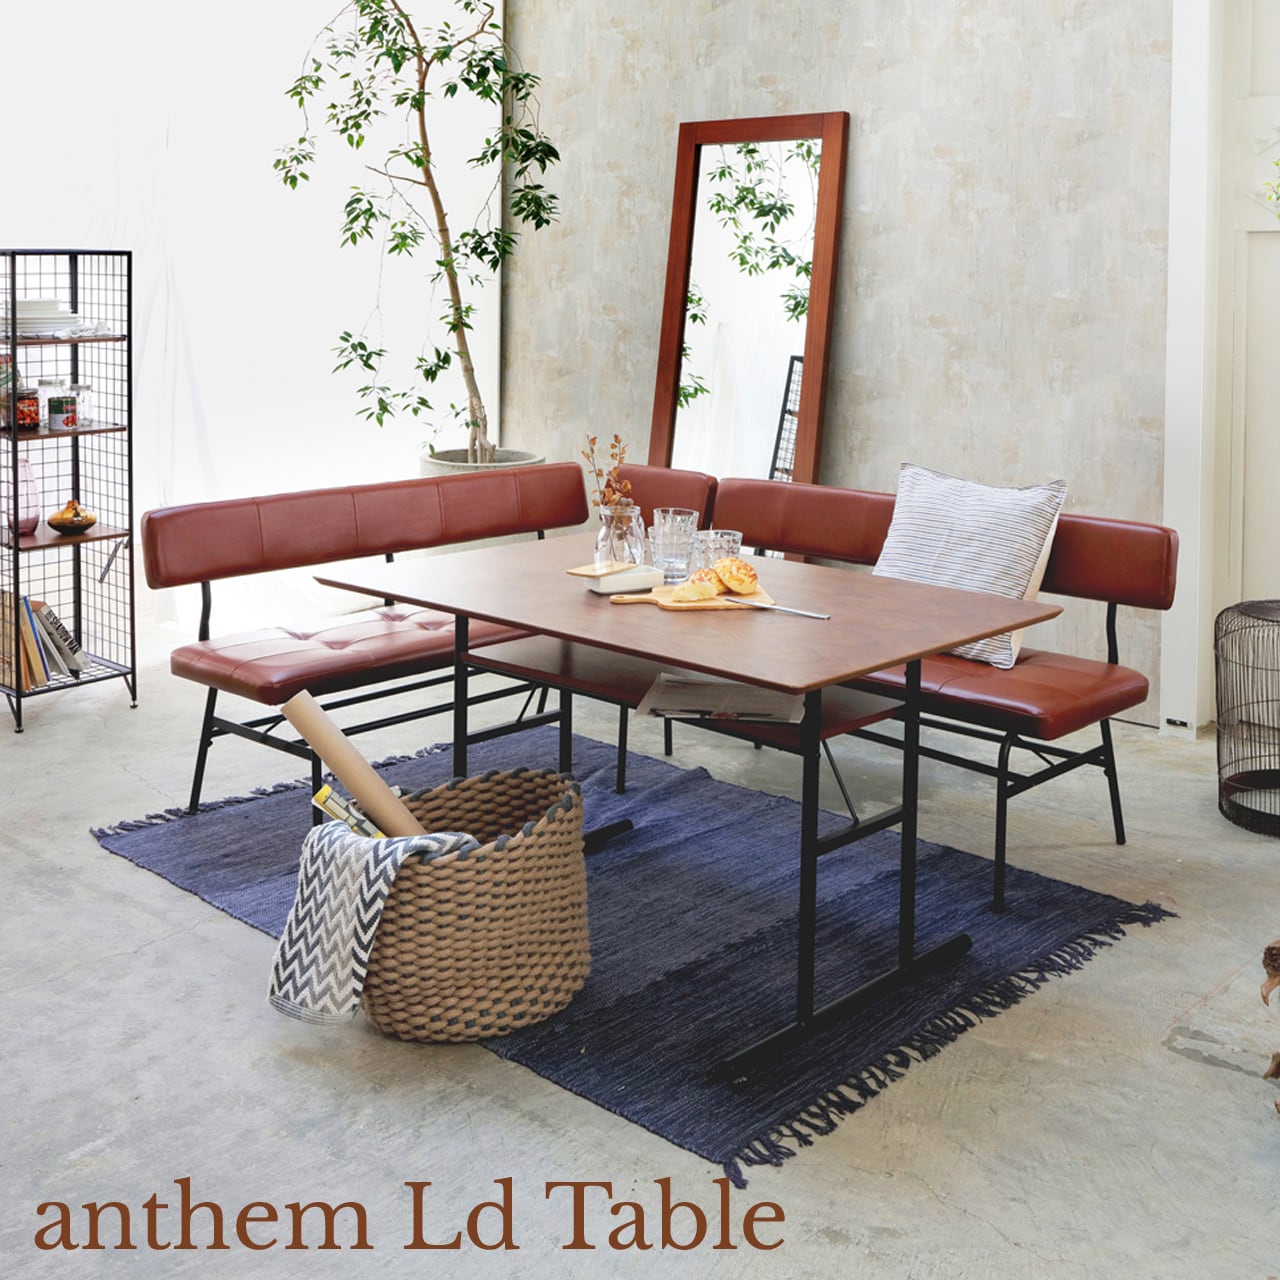 anthem Ld Table アンセム LDテーブル ant-3049br | art interior